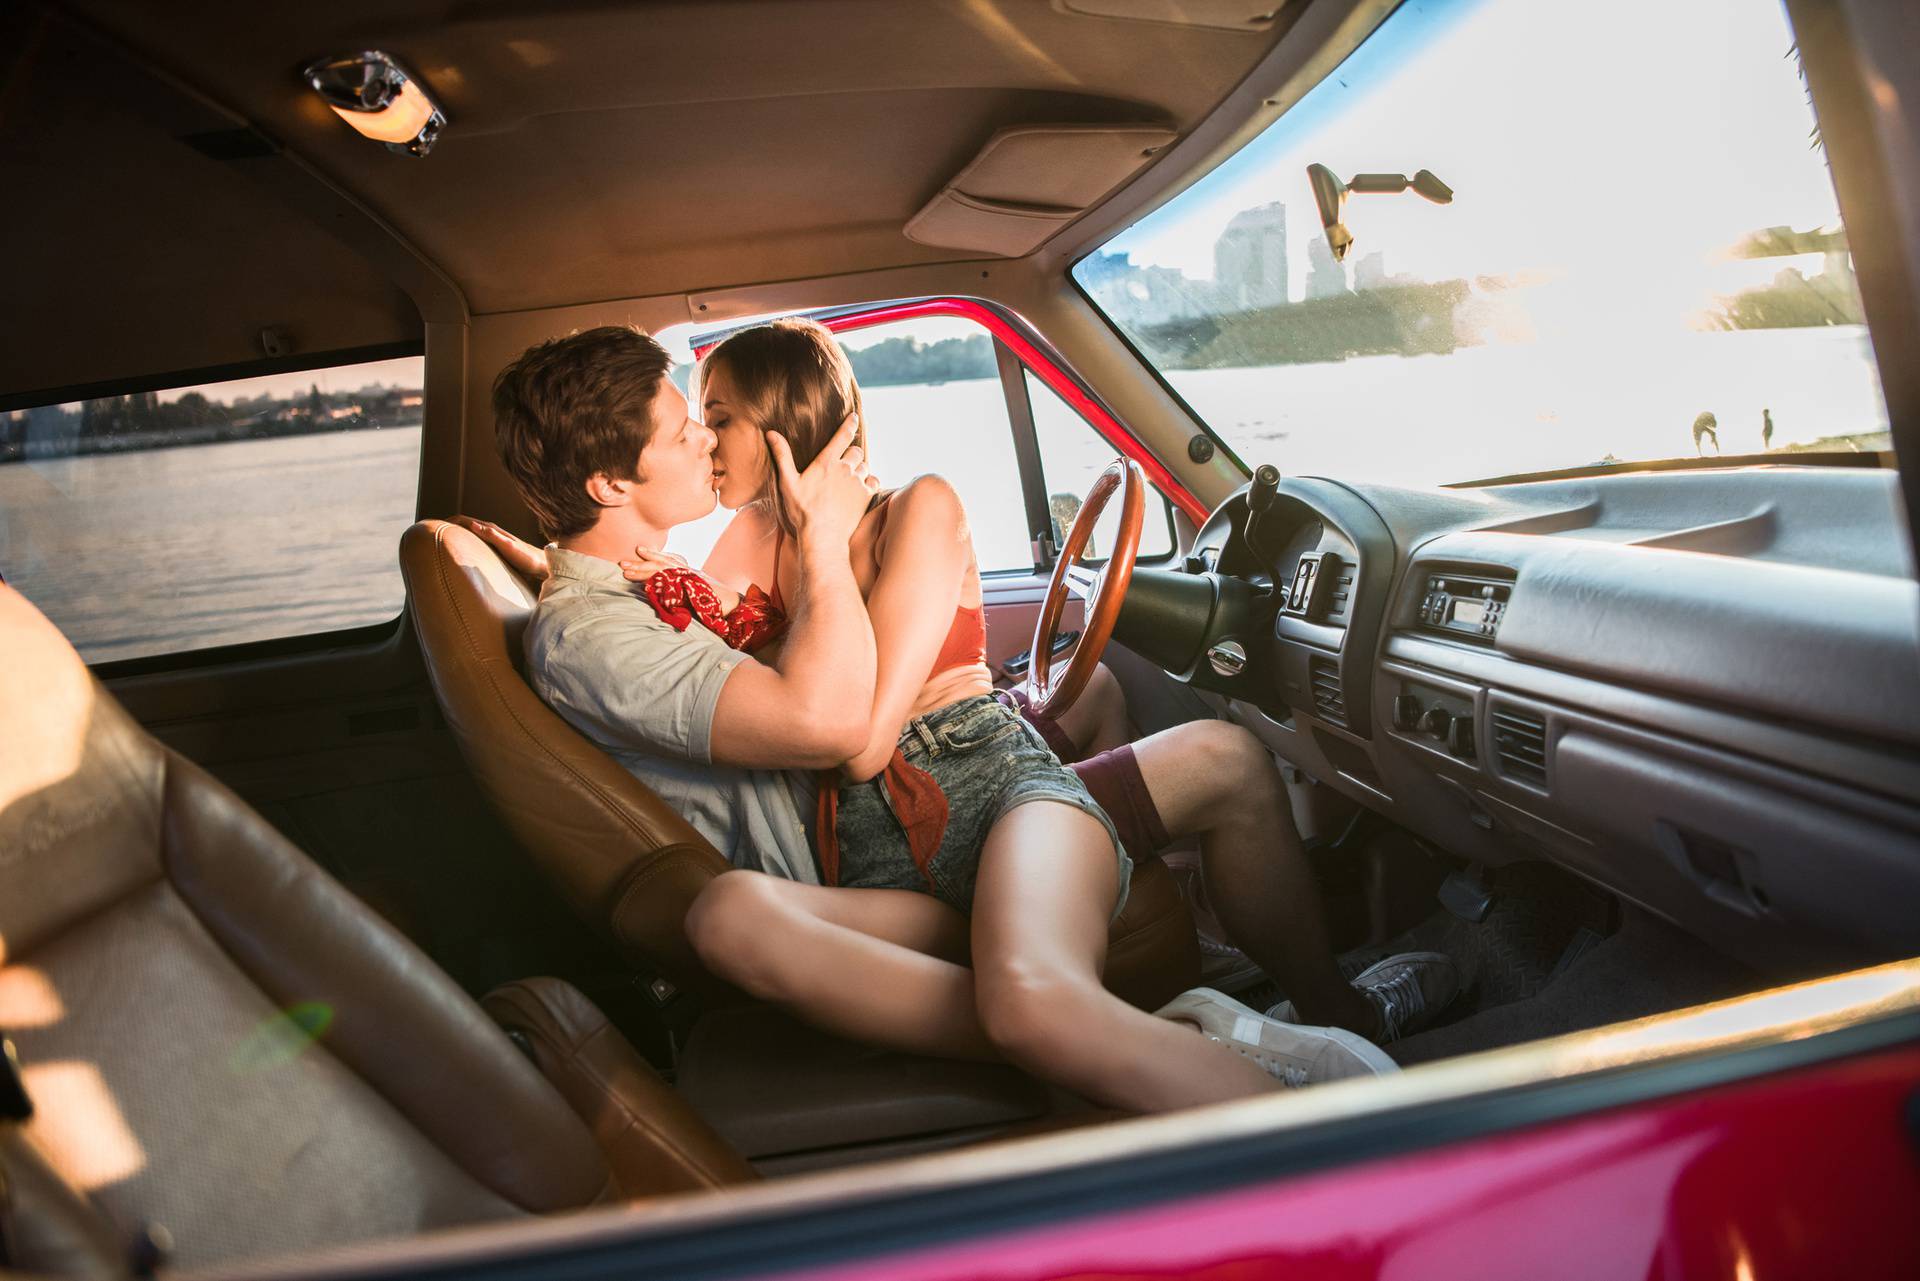 Poboljšajte seks u autu: Ovih 14 ideja probudit će zvijer u vama